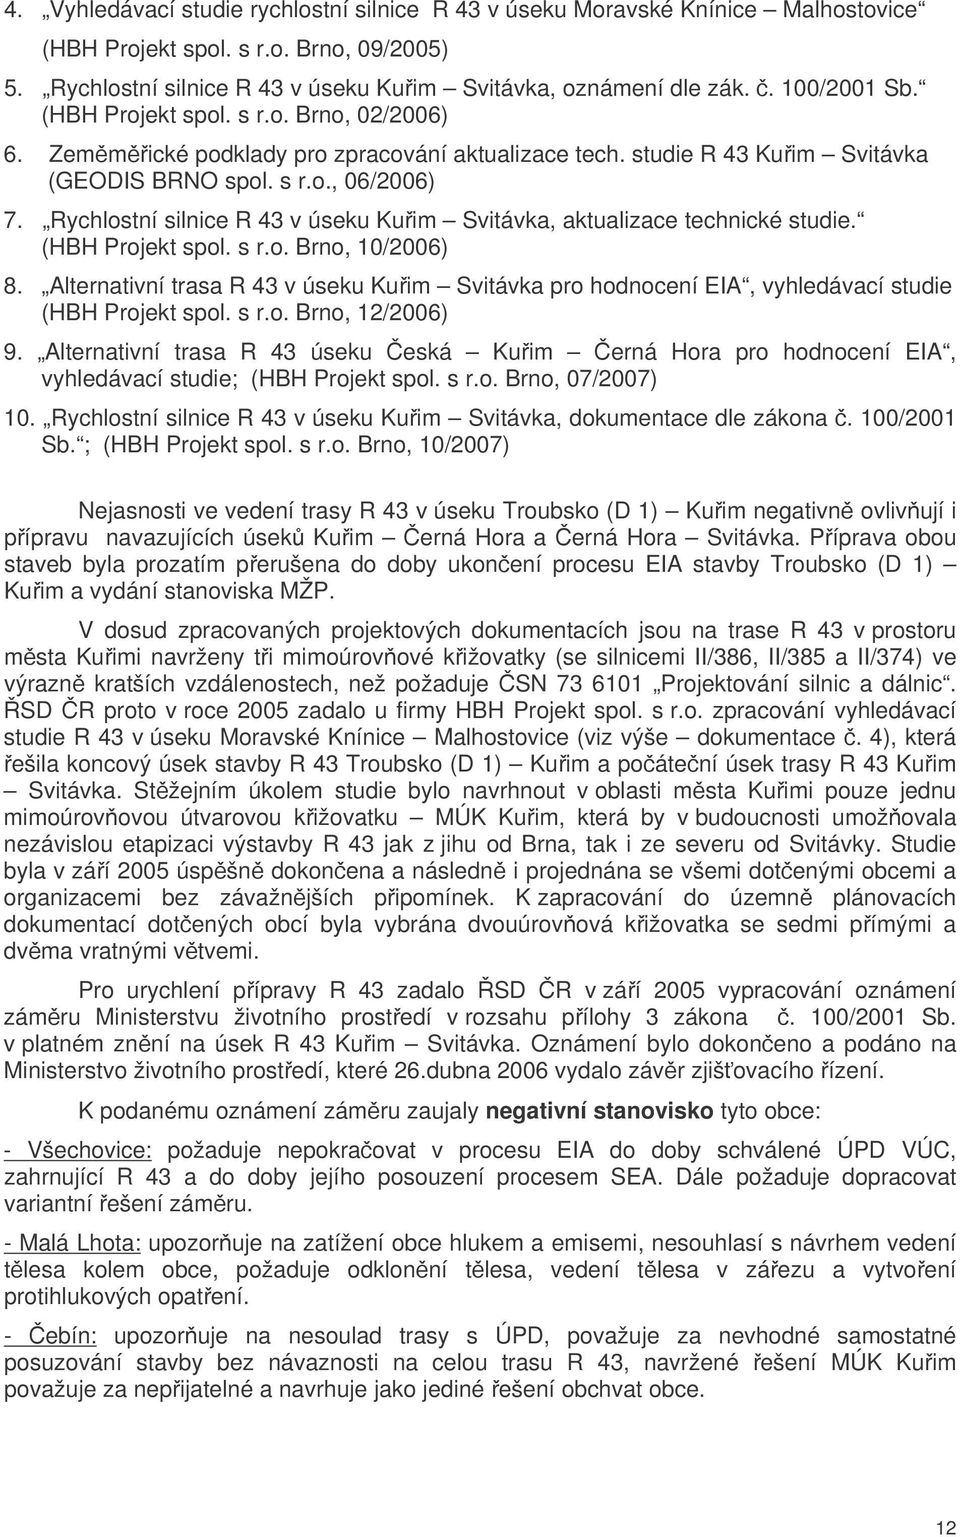 Rychlostní silnice R 43 v úseku Kuim Svitávka, aktualizace technické studie. (HBH Projekt spol. s r.o. Brno, 10/2006) 8.